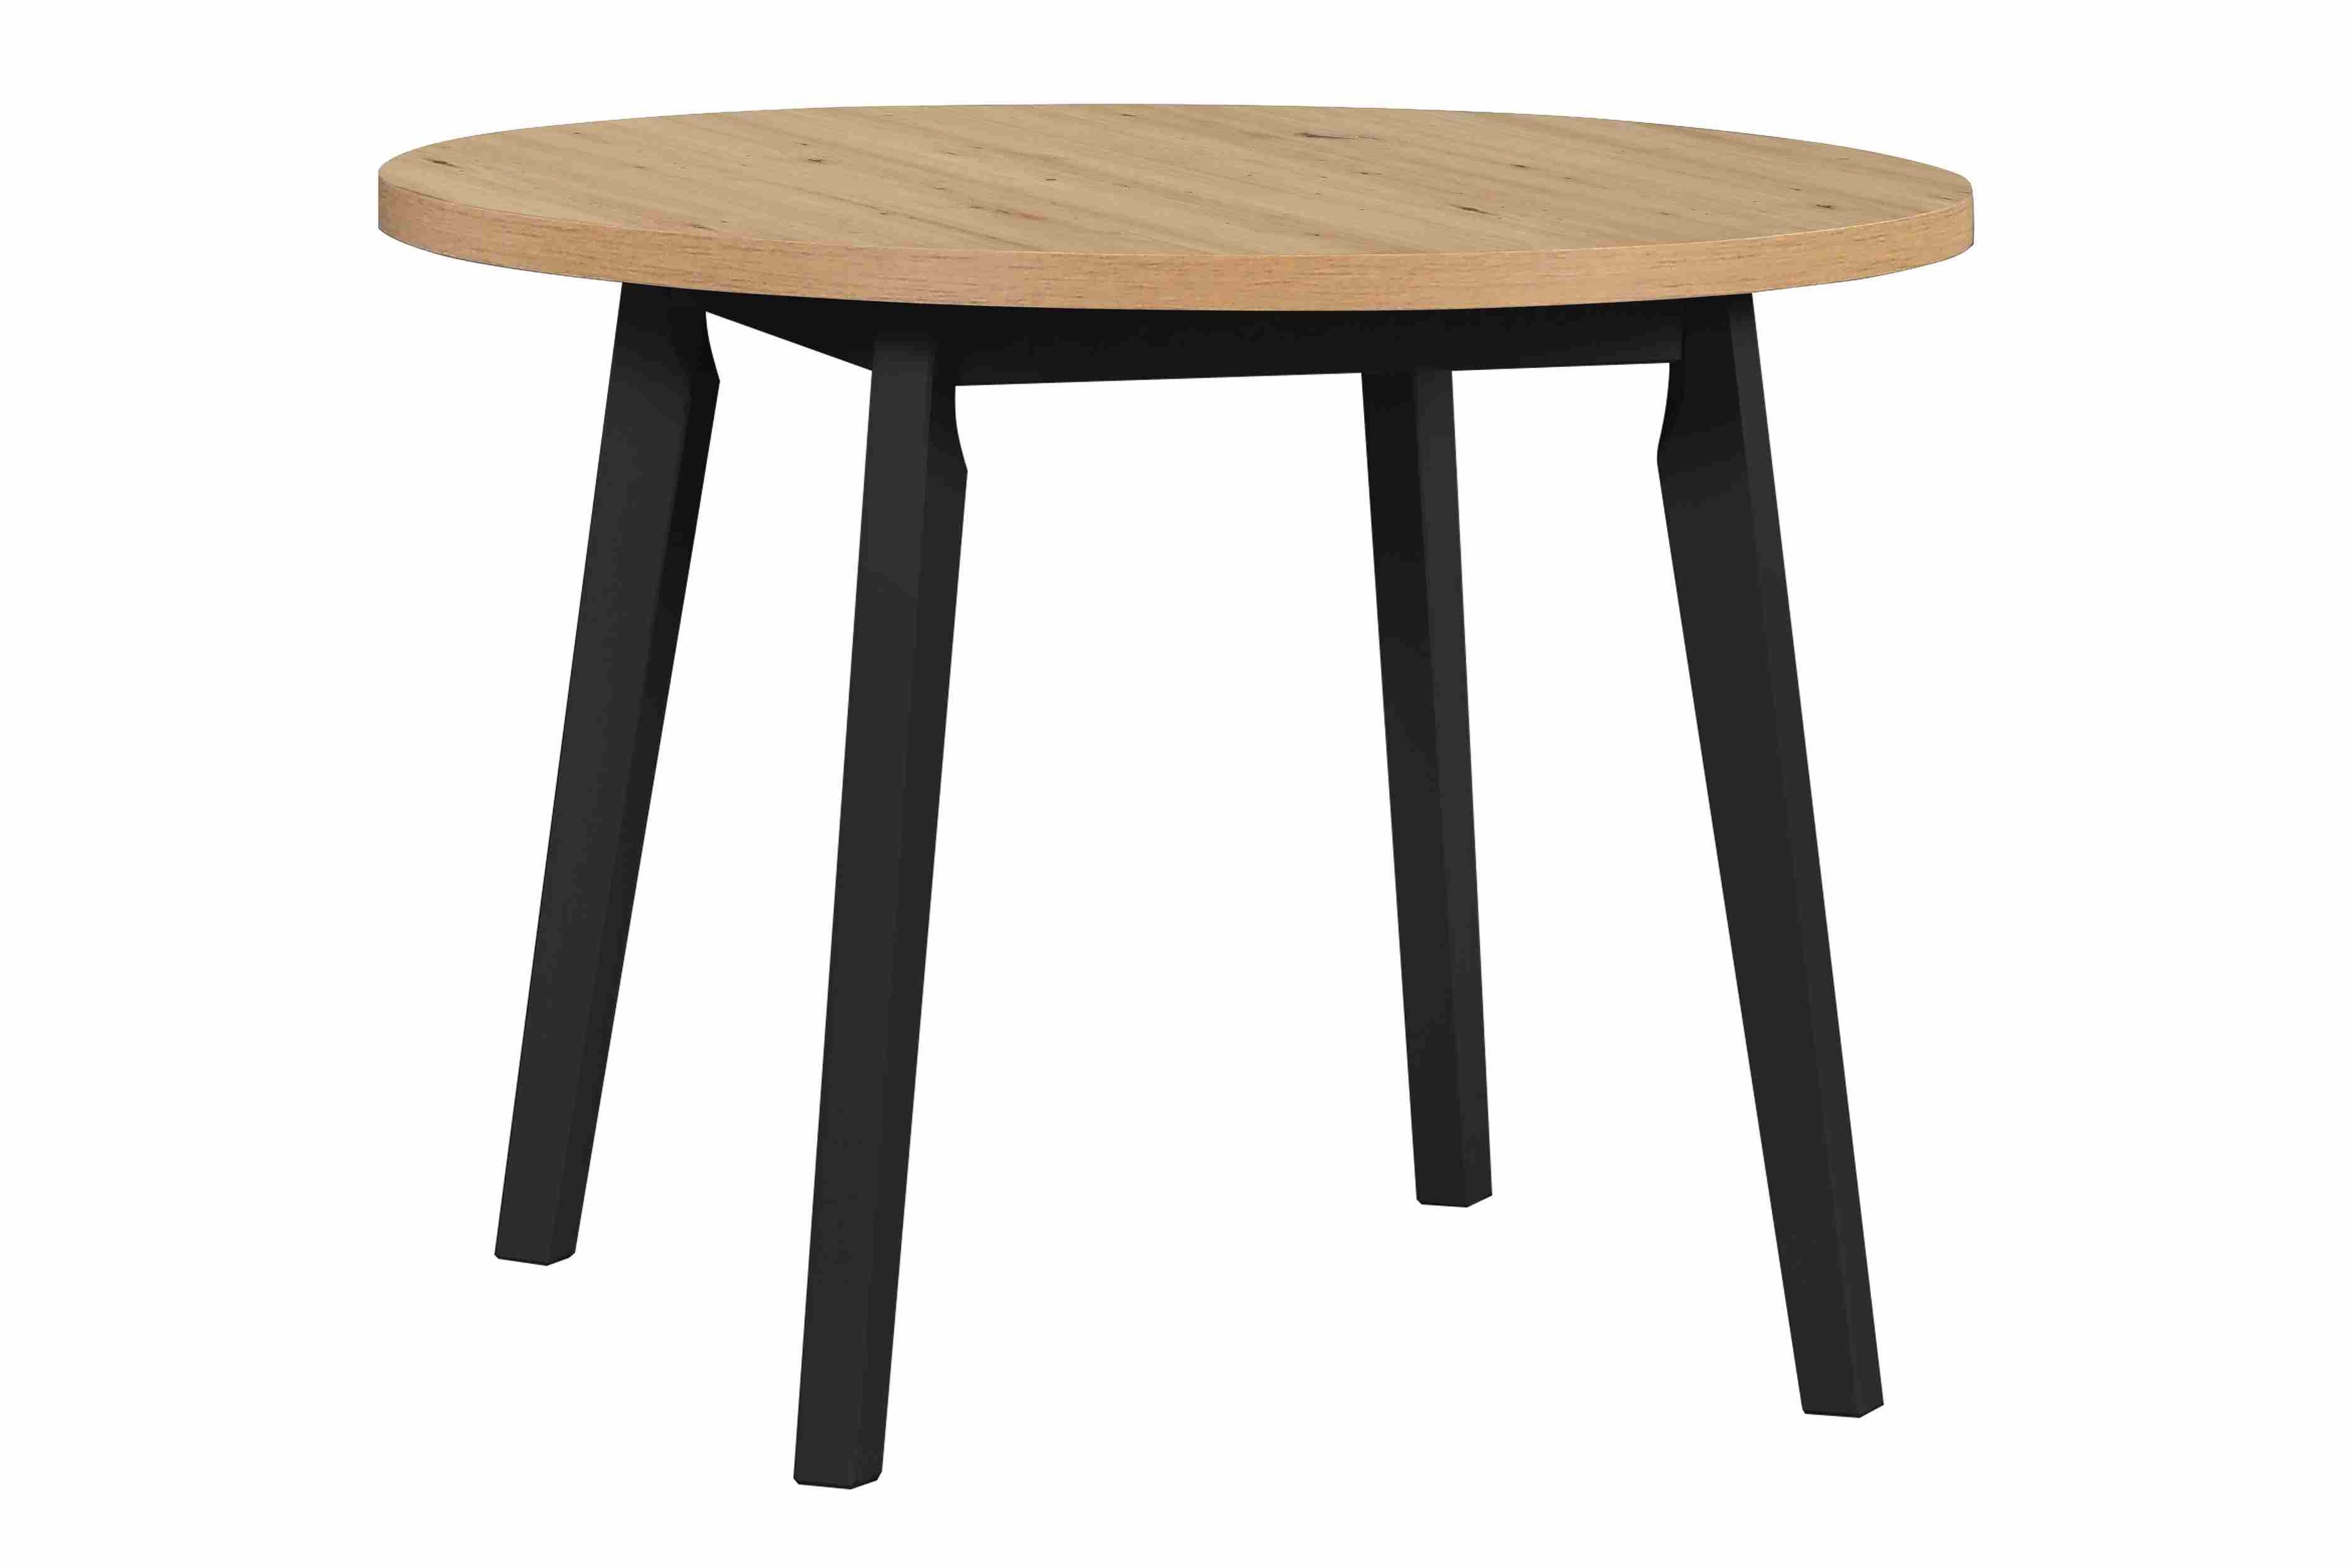 Furnix Esstisch Olimo 3L Küchen-Tisch rund ausziehbar 100/130 cm, 100/130x75x100 cm, Gestell und Beine Buche, pflegeleicht& robust